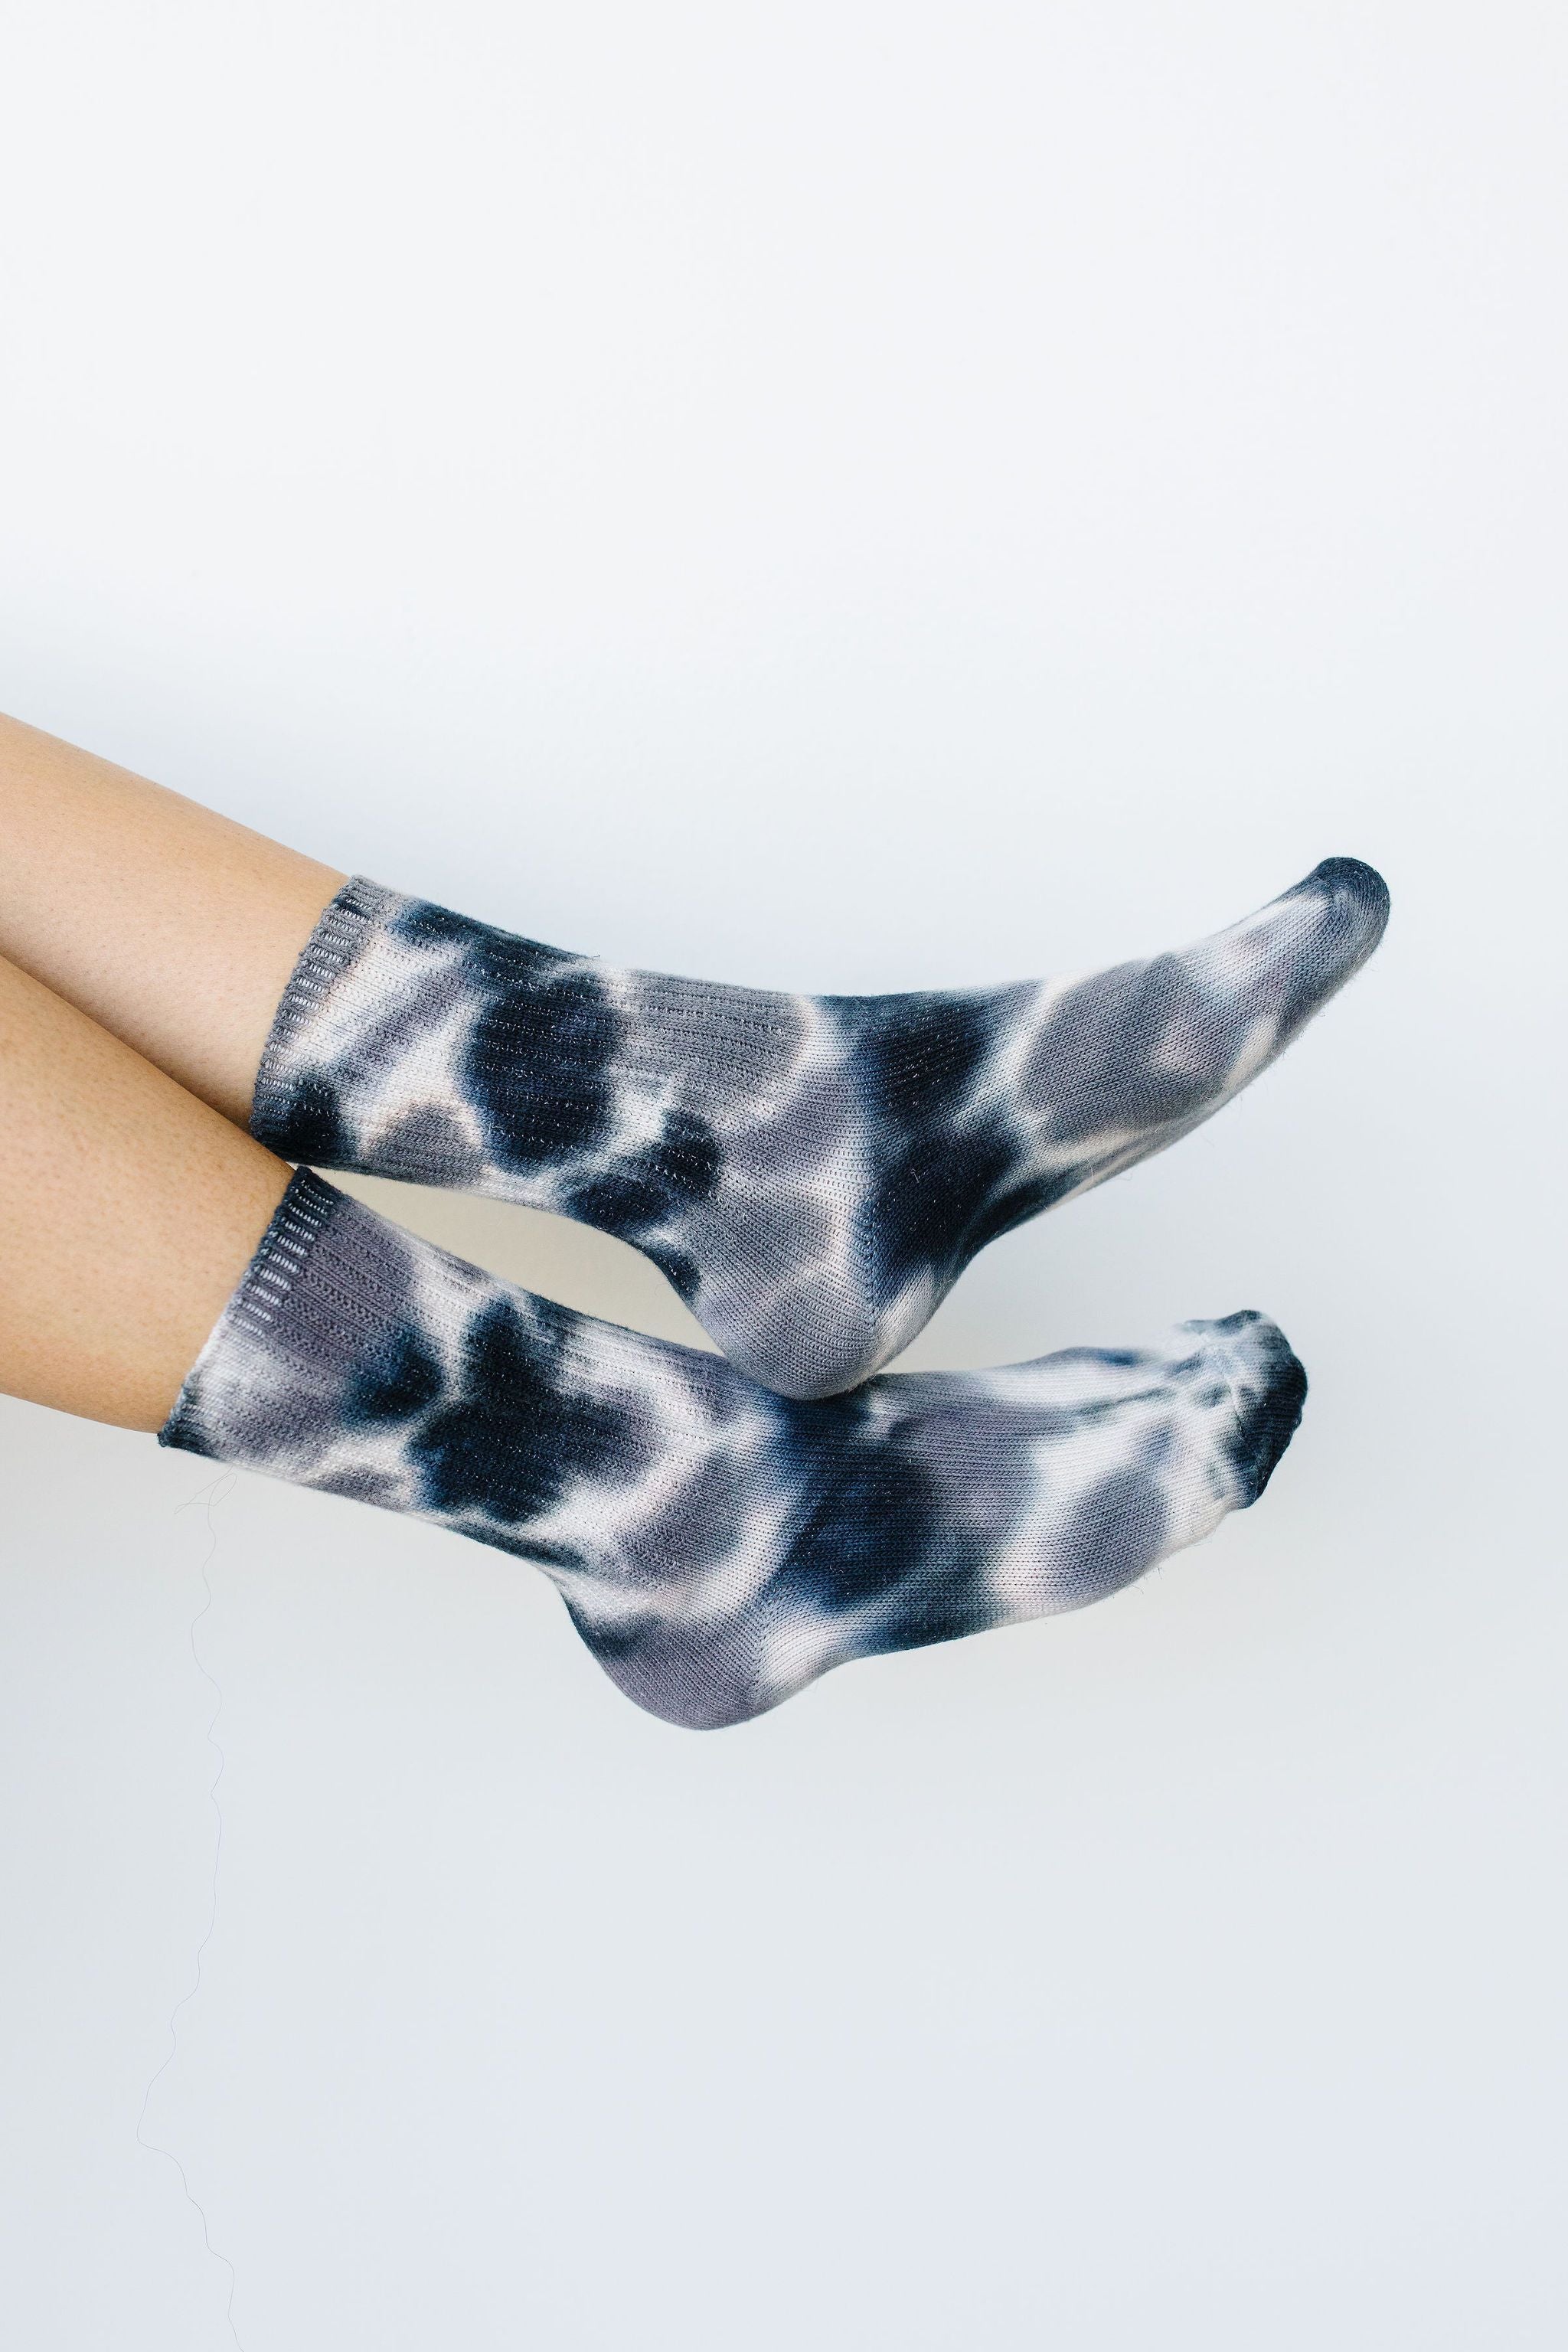 Happy Feet Tie Dye Socks In Black & Gray